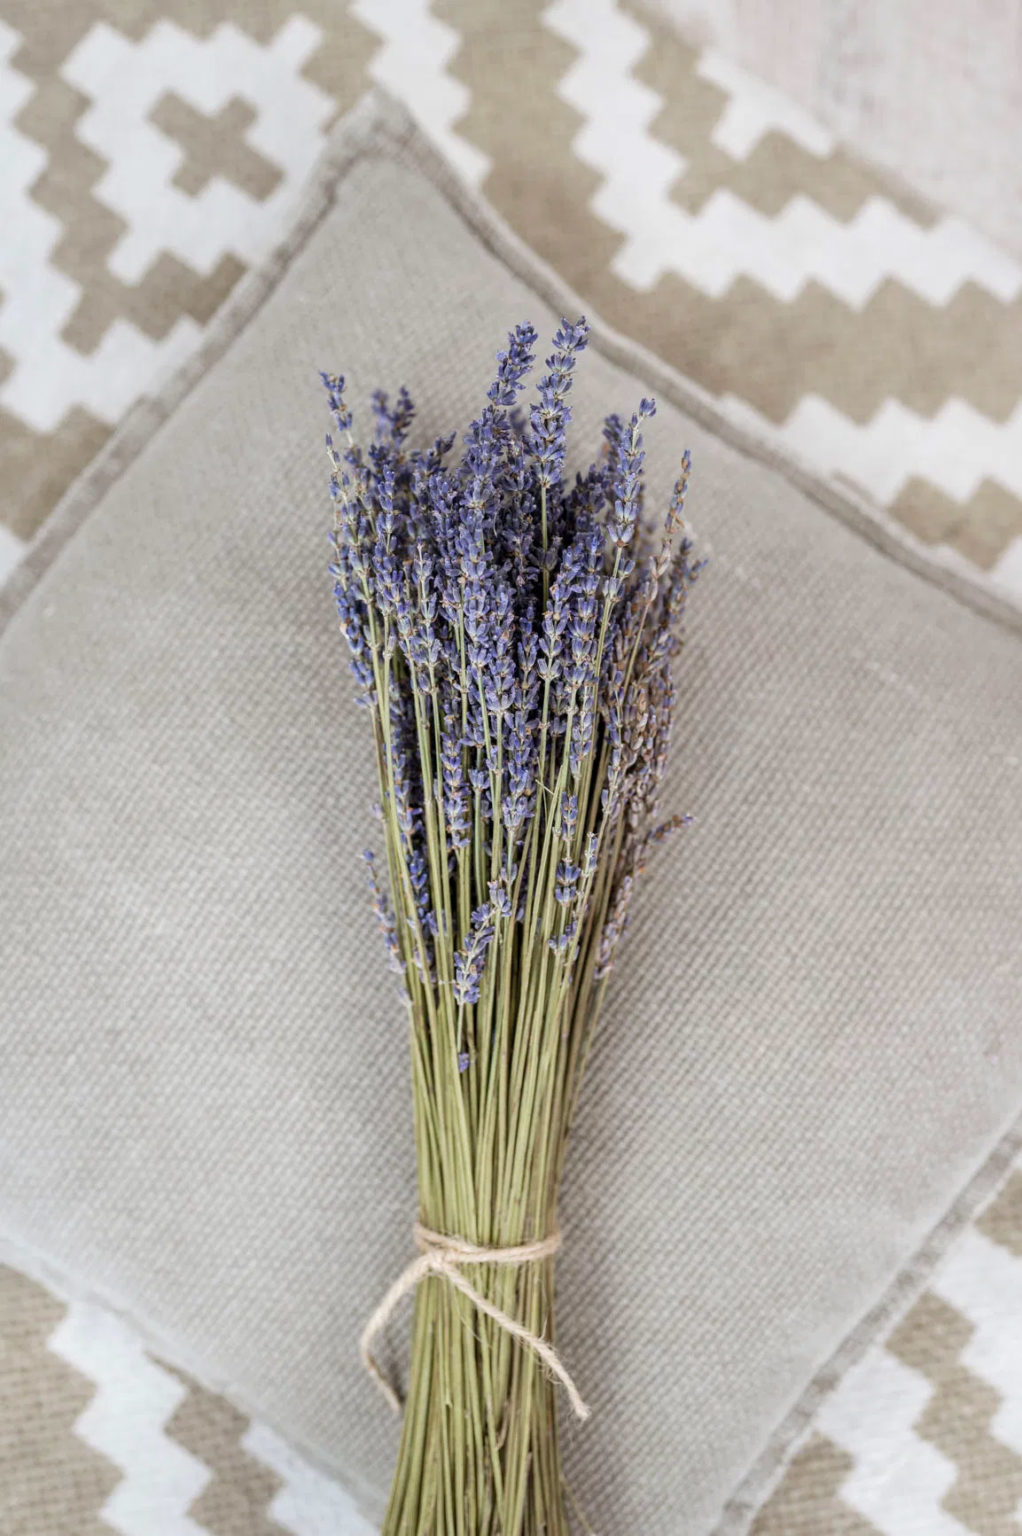 Lavendel getrocknet | natur 1 Bund online kaufen